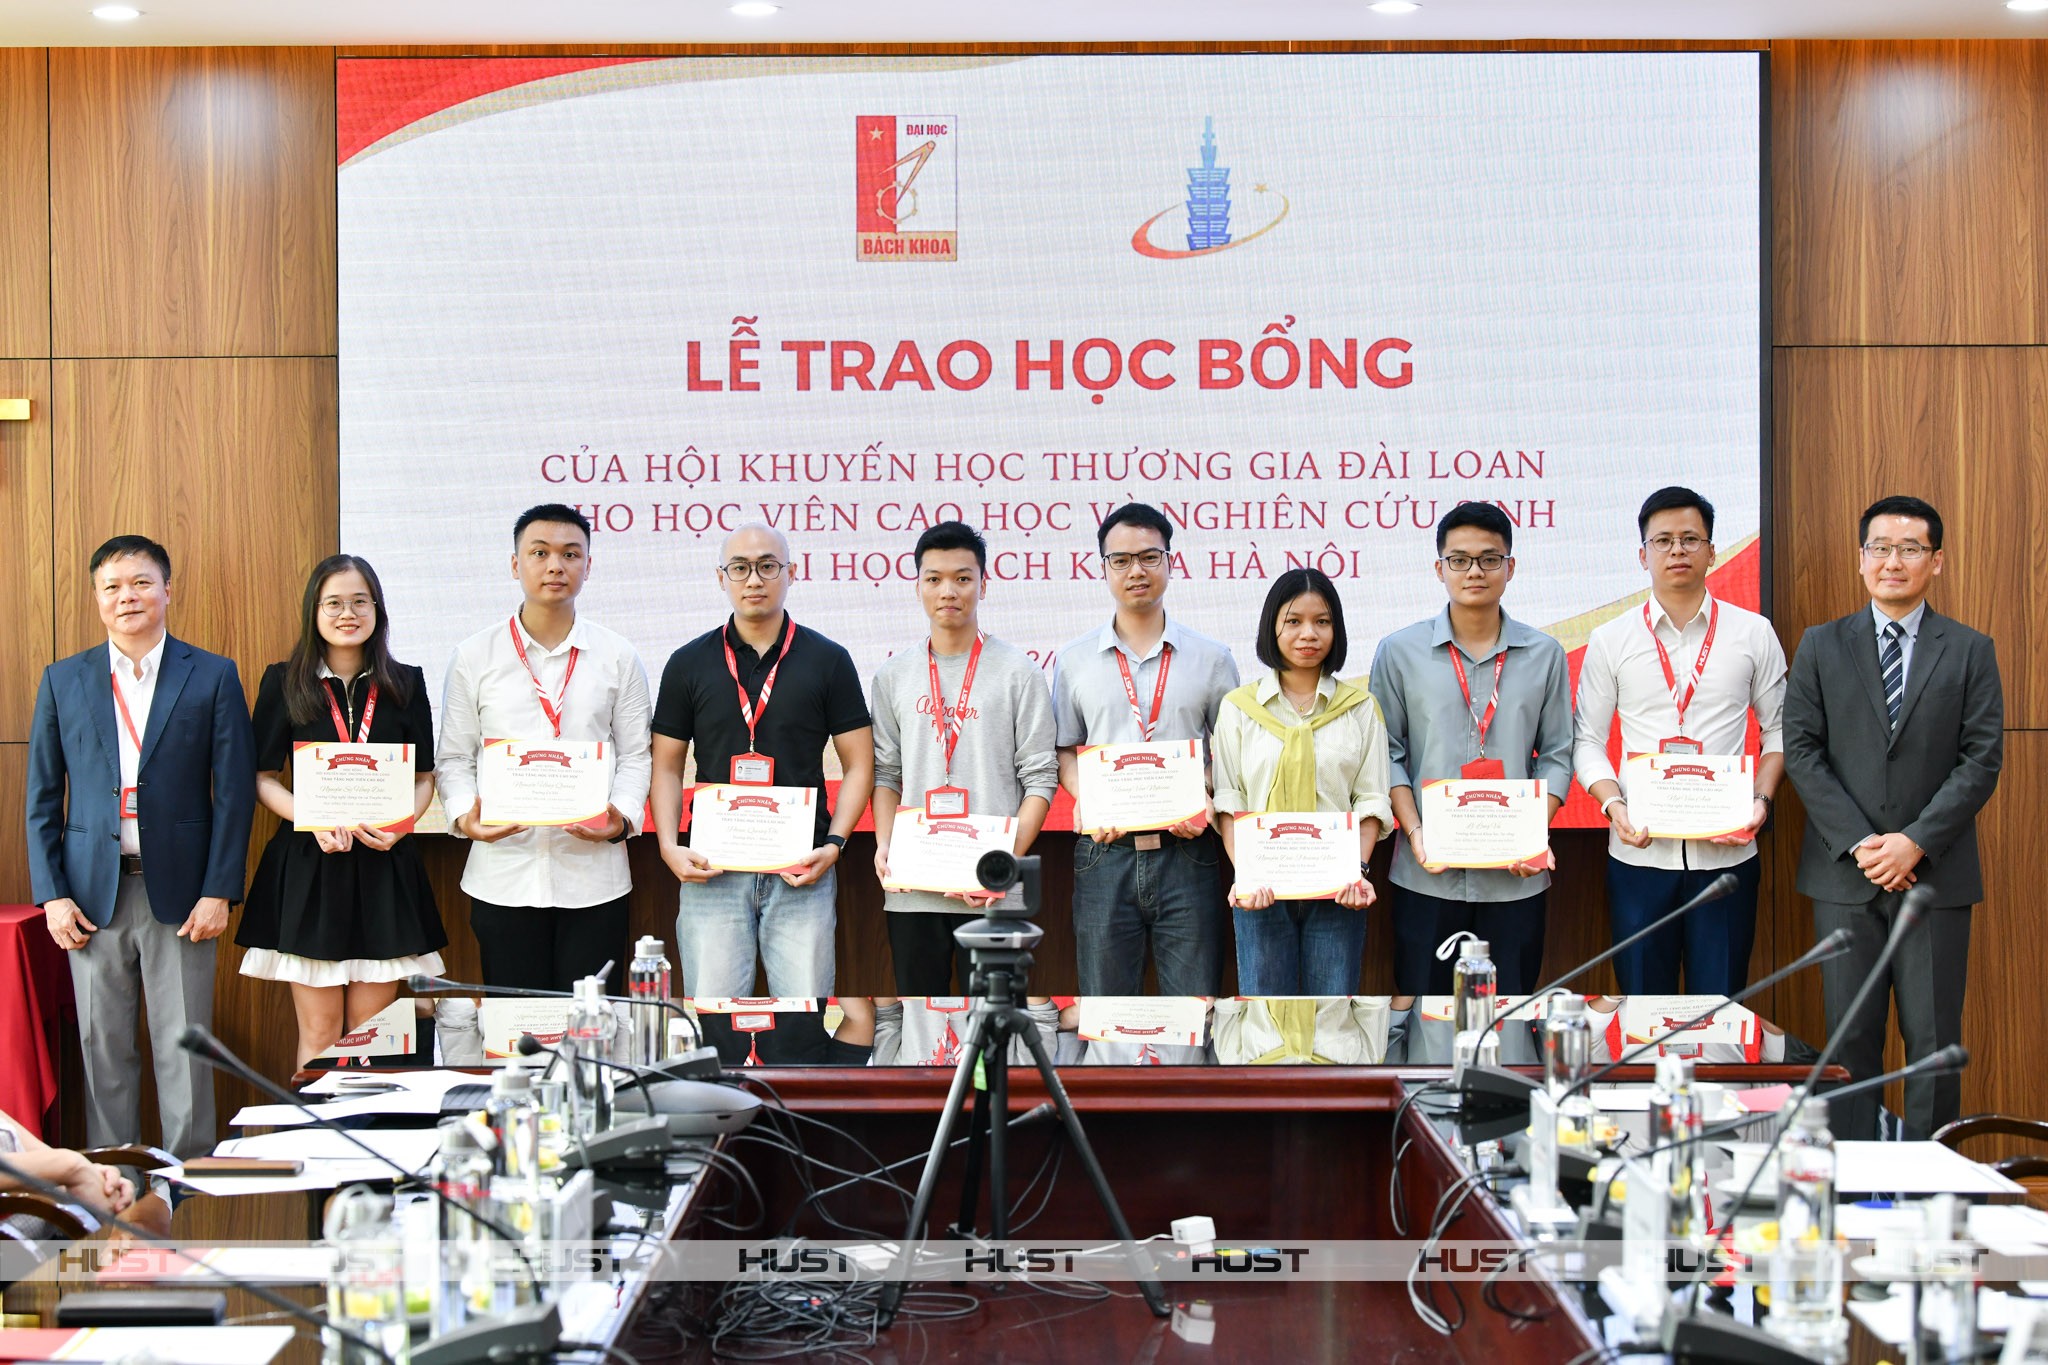 21 học sinh, nghiên cứu sinh Đại học Bách khoa Hà Nội nhận học bổng của Hội Khuyến học Thương gia Đài Loan